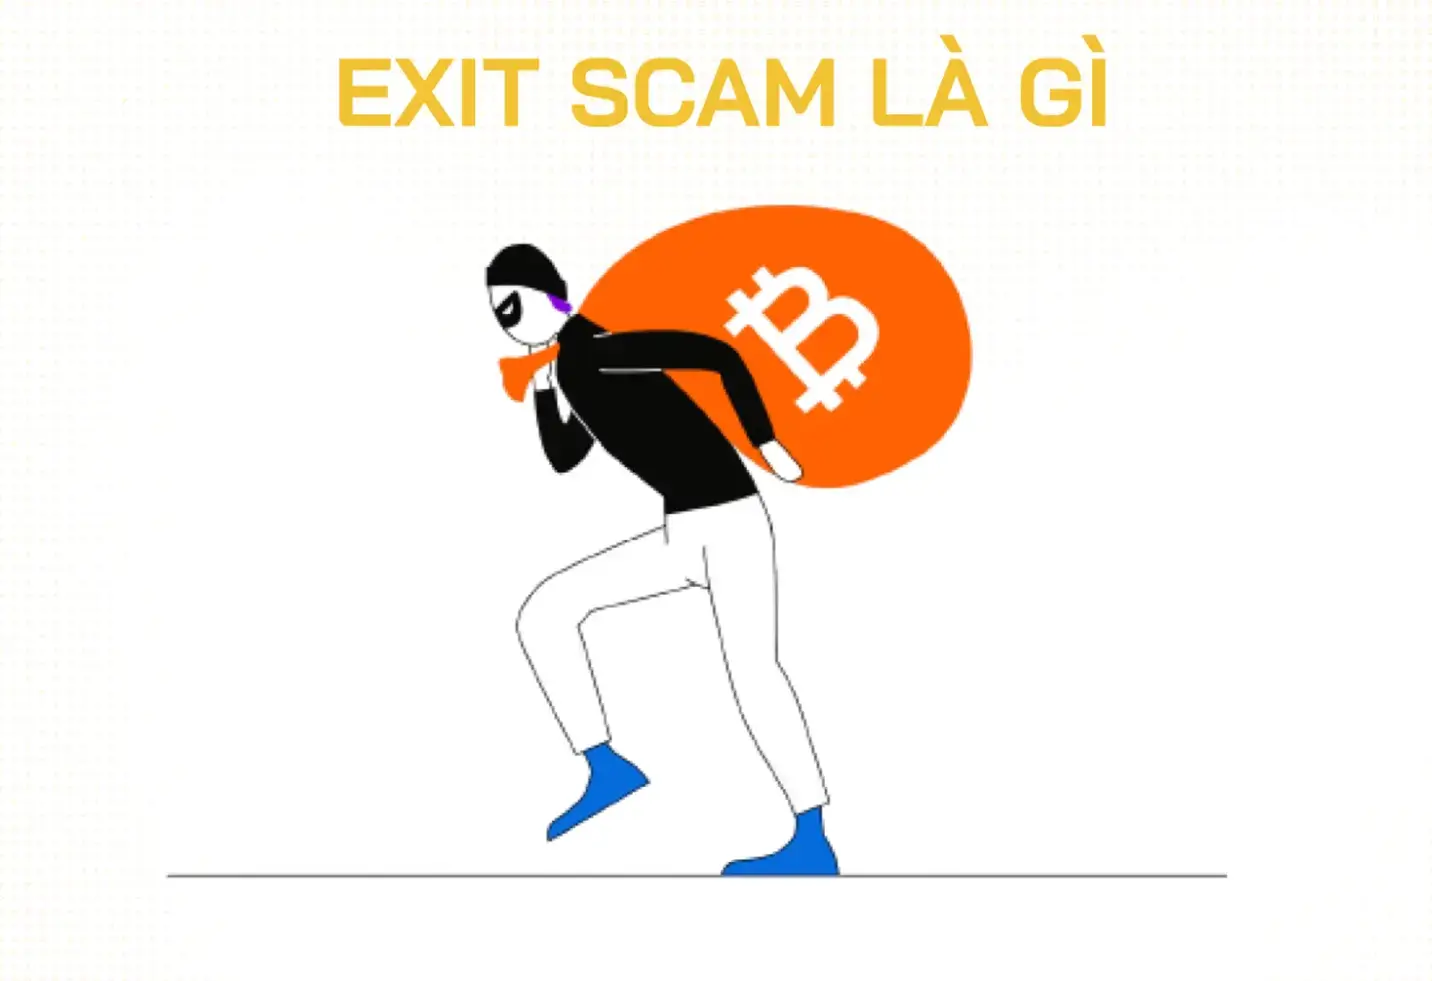 Exit Scam là gì? Cách phòng tránh và dấu hiệu nhận biết